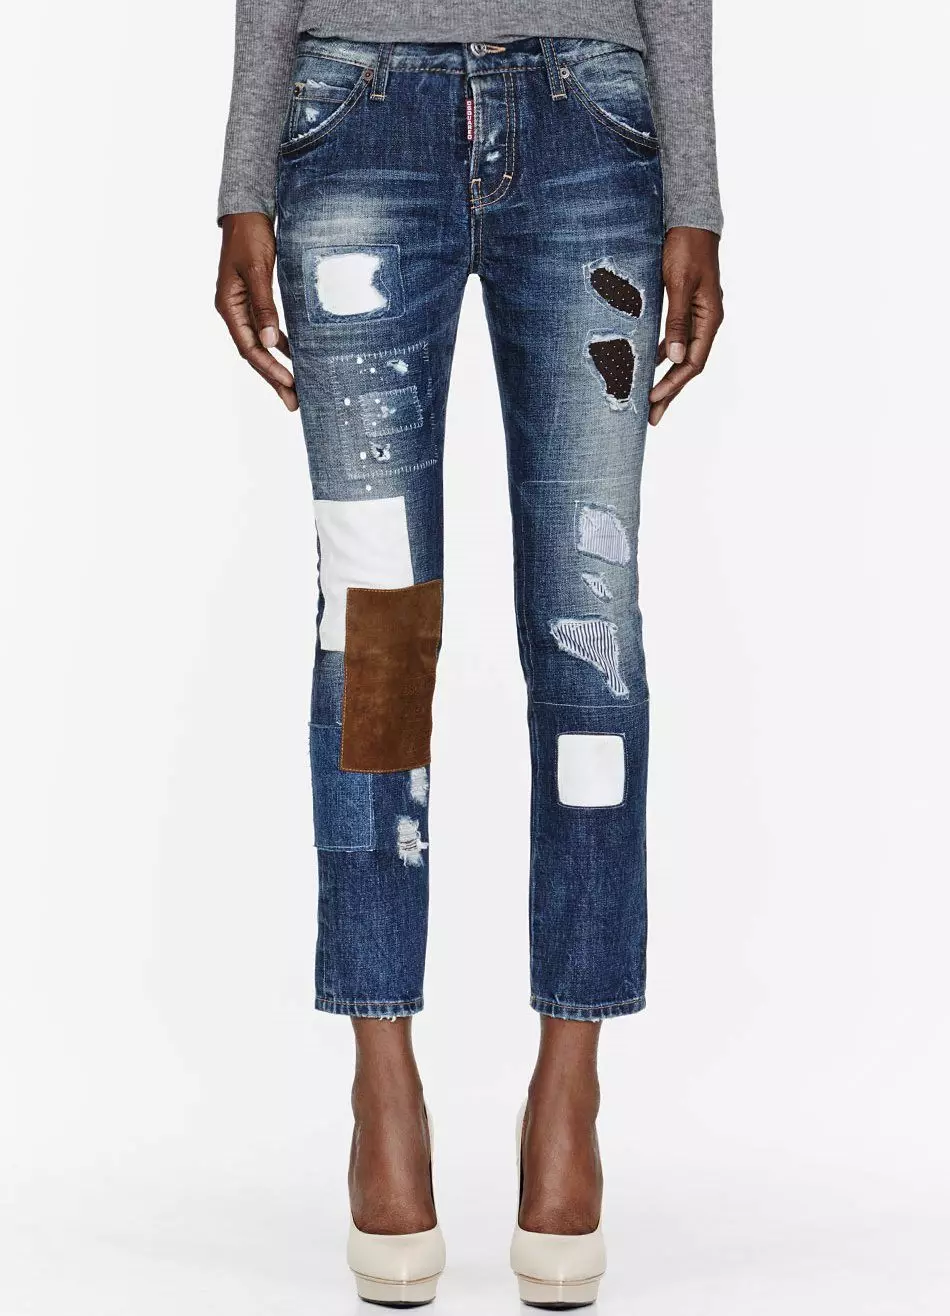 Lee Jeans (52 foto): modelli femminili, come distinguere l'originale dal falso 1091_17